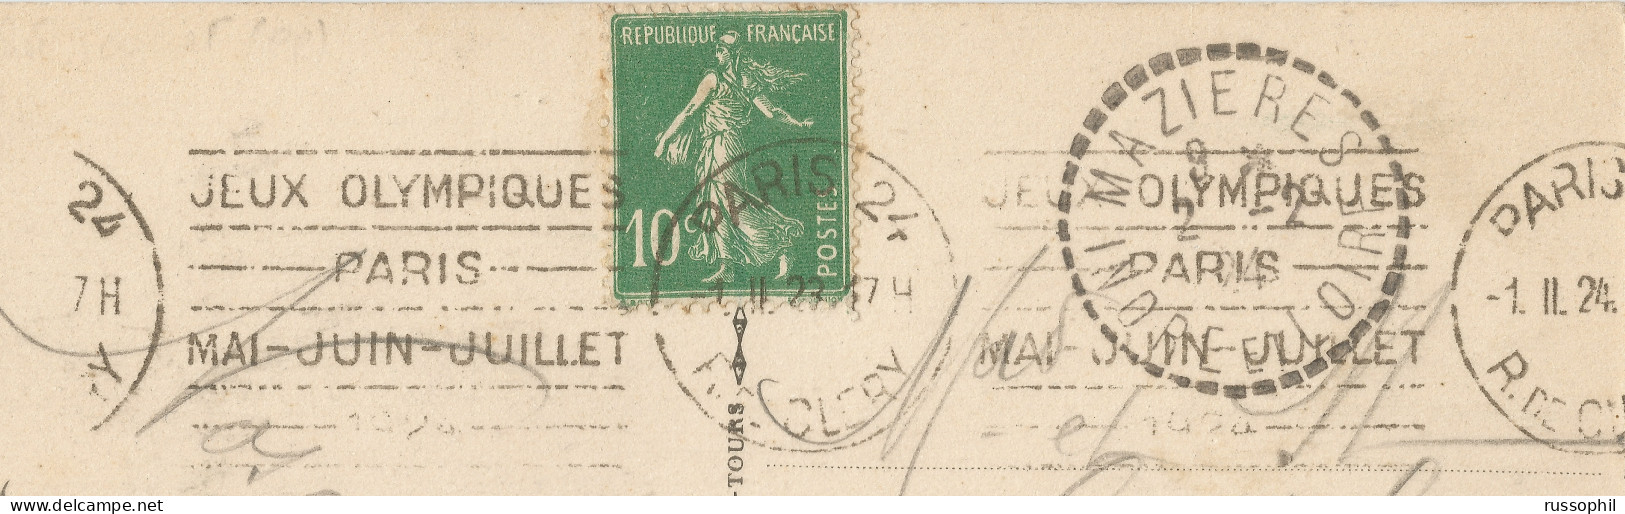 FRANCE - KRAG DEPARTURE PMK "PARIS 24 JEUX OLYMPIQUES" ON FRANKED PC (VIEW OF PARIS) TO MAZIERES (37) - 1924 - Ete 1924: Paris